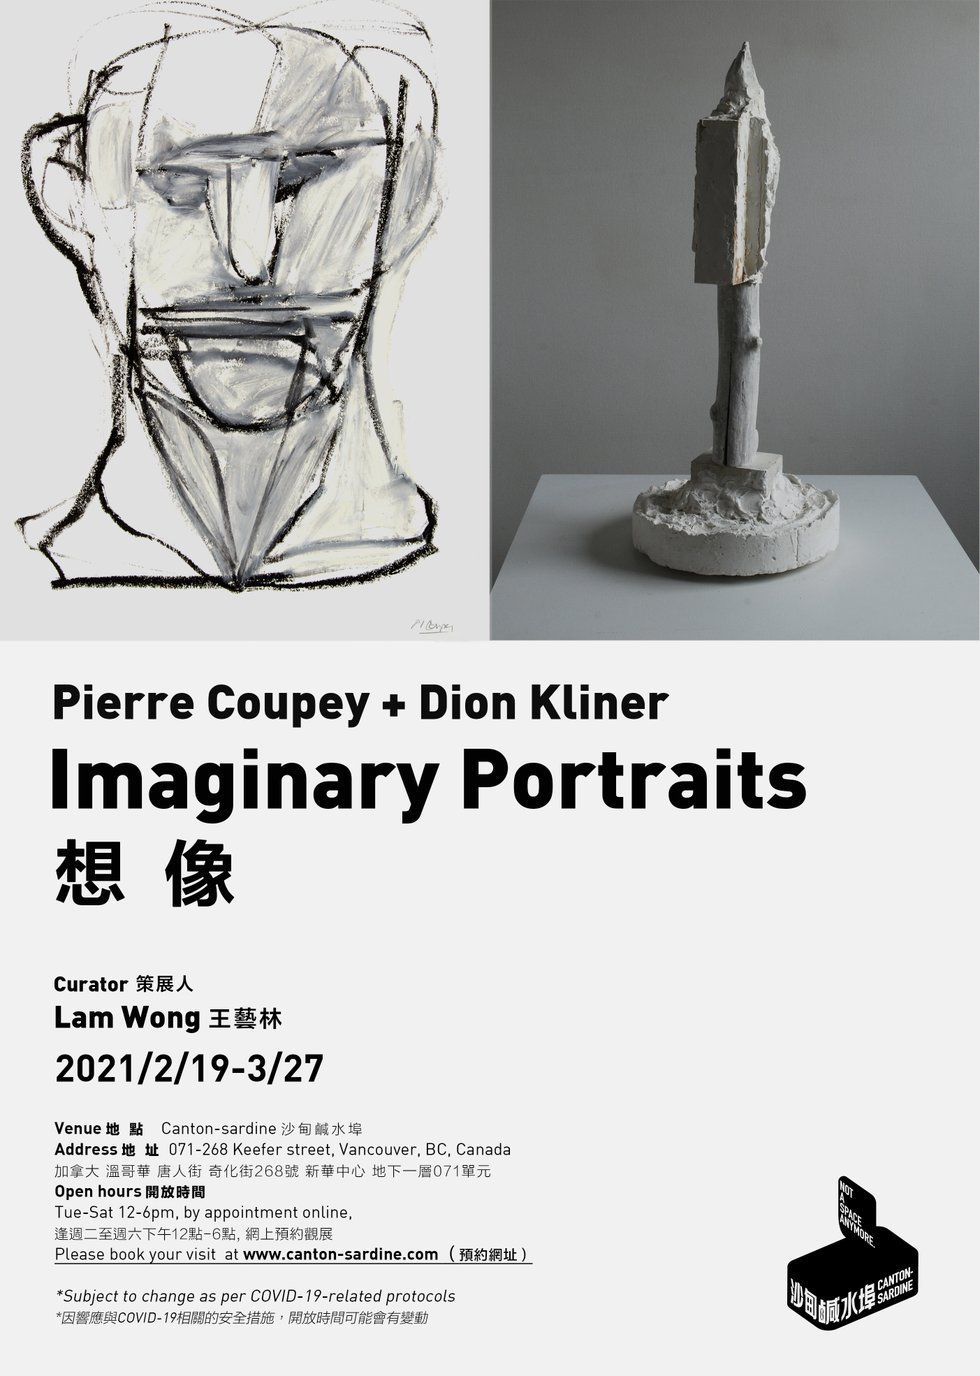 Left: Pierre Coupey, "Imaginary Portrait 23," 1995